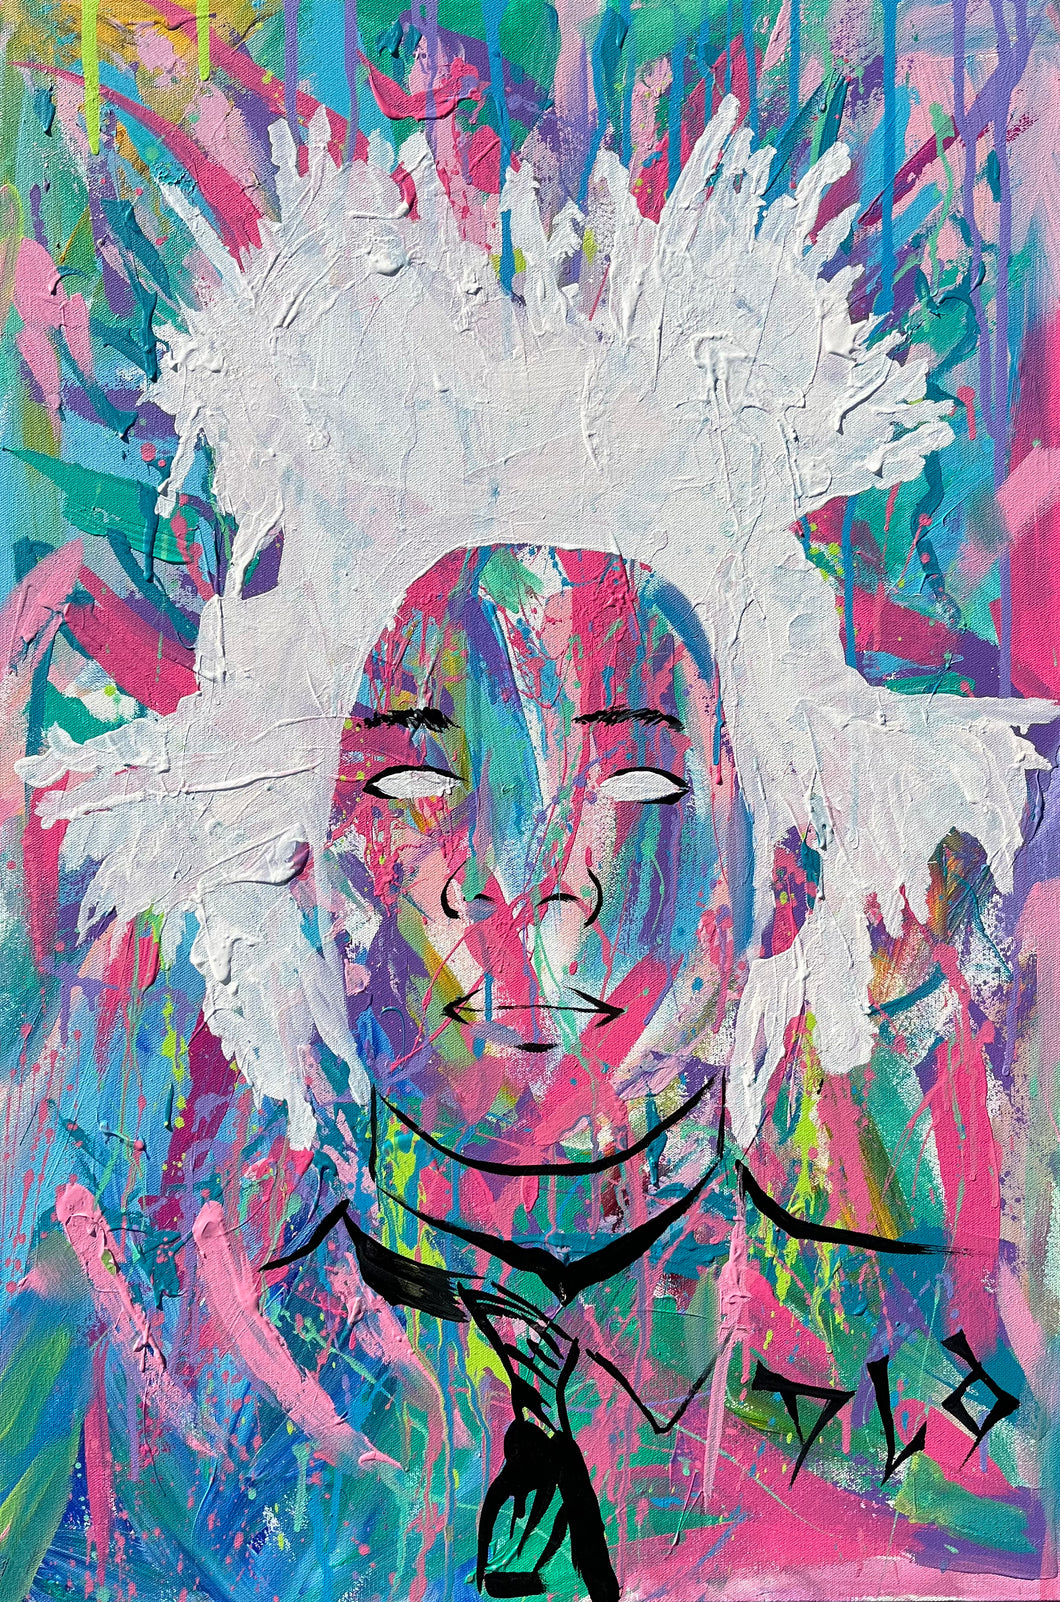 Original Artwork “Basquiat”